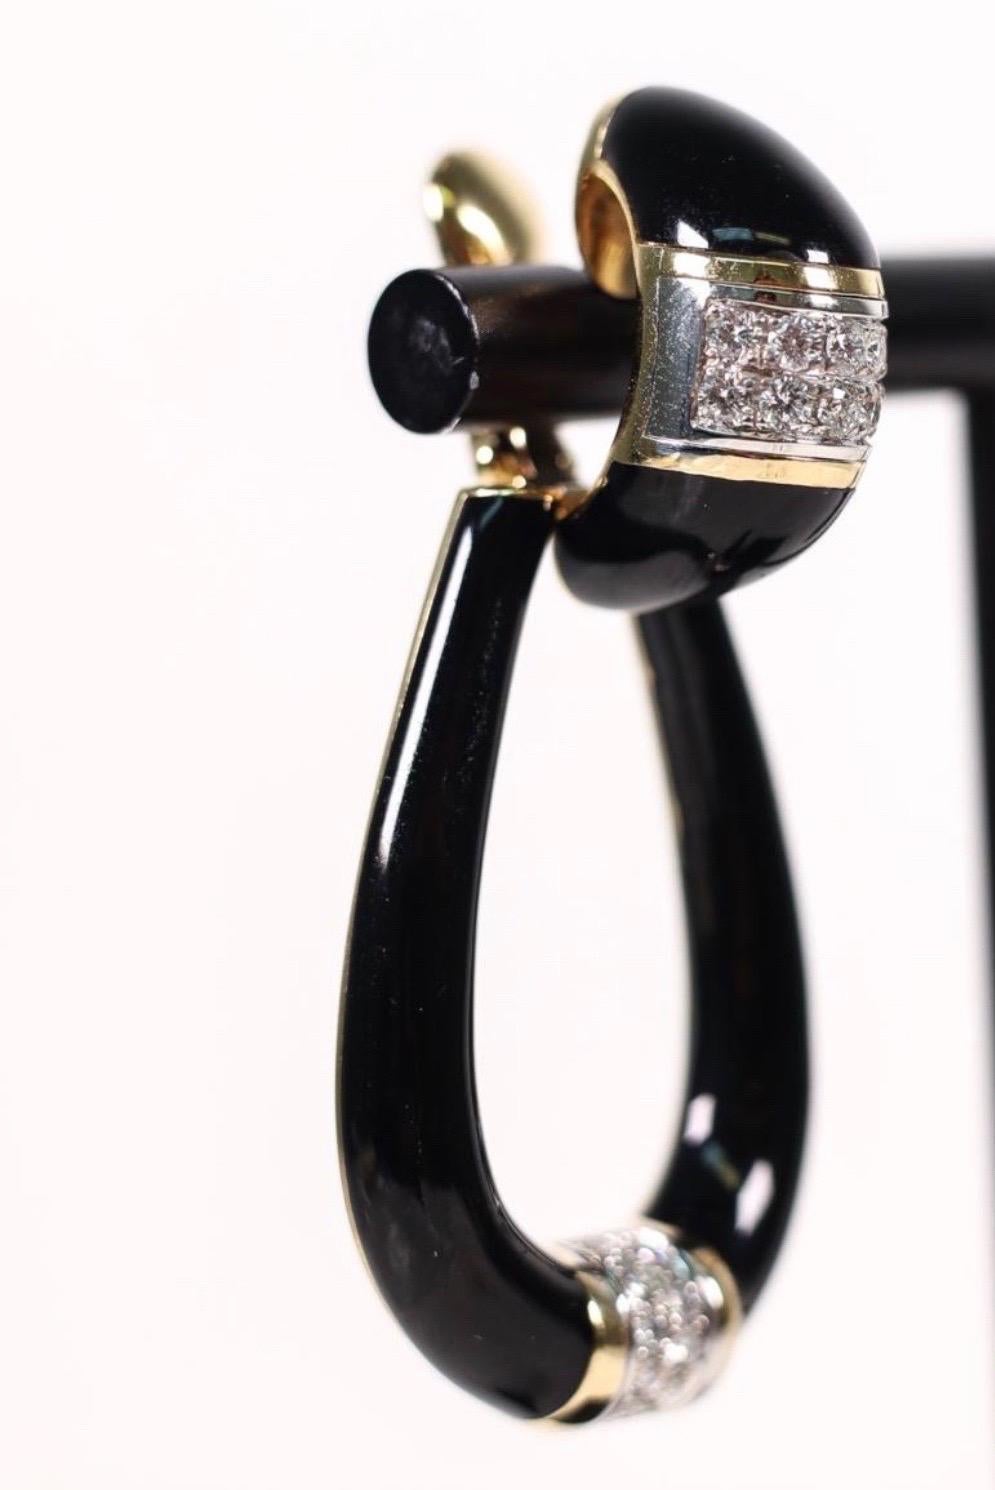 Schöne Vintage David Webb Ohrringe mit schwarzer Emaille und abnehmbarem Boden. Die Ohrringe können leicht in Post- und Omega-Backs umgewandelt werden.
Die Emaille ist in ausgezeichnetem Zustand und wird von ca. 1,00ctw G/H VS Diamanten akzentuiert.